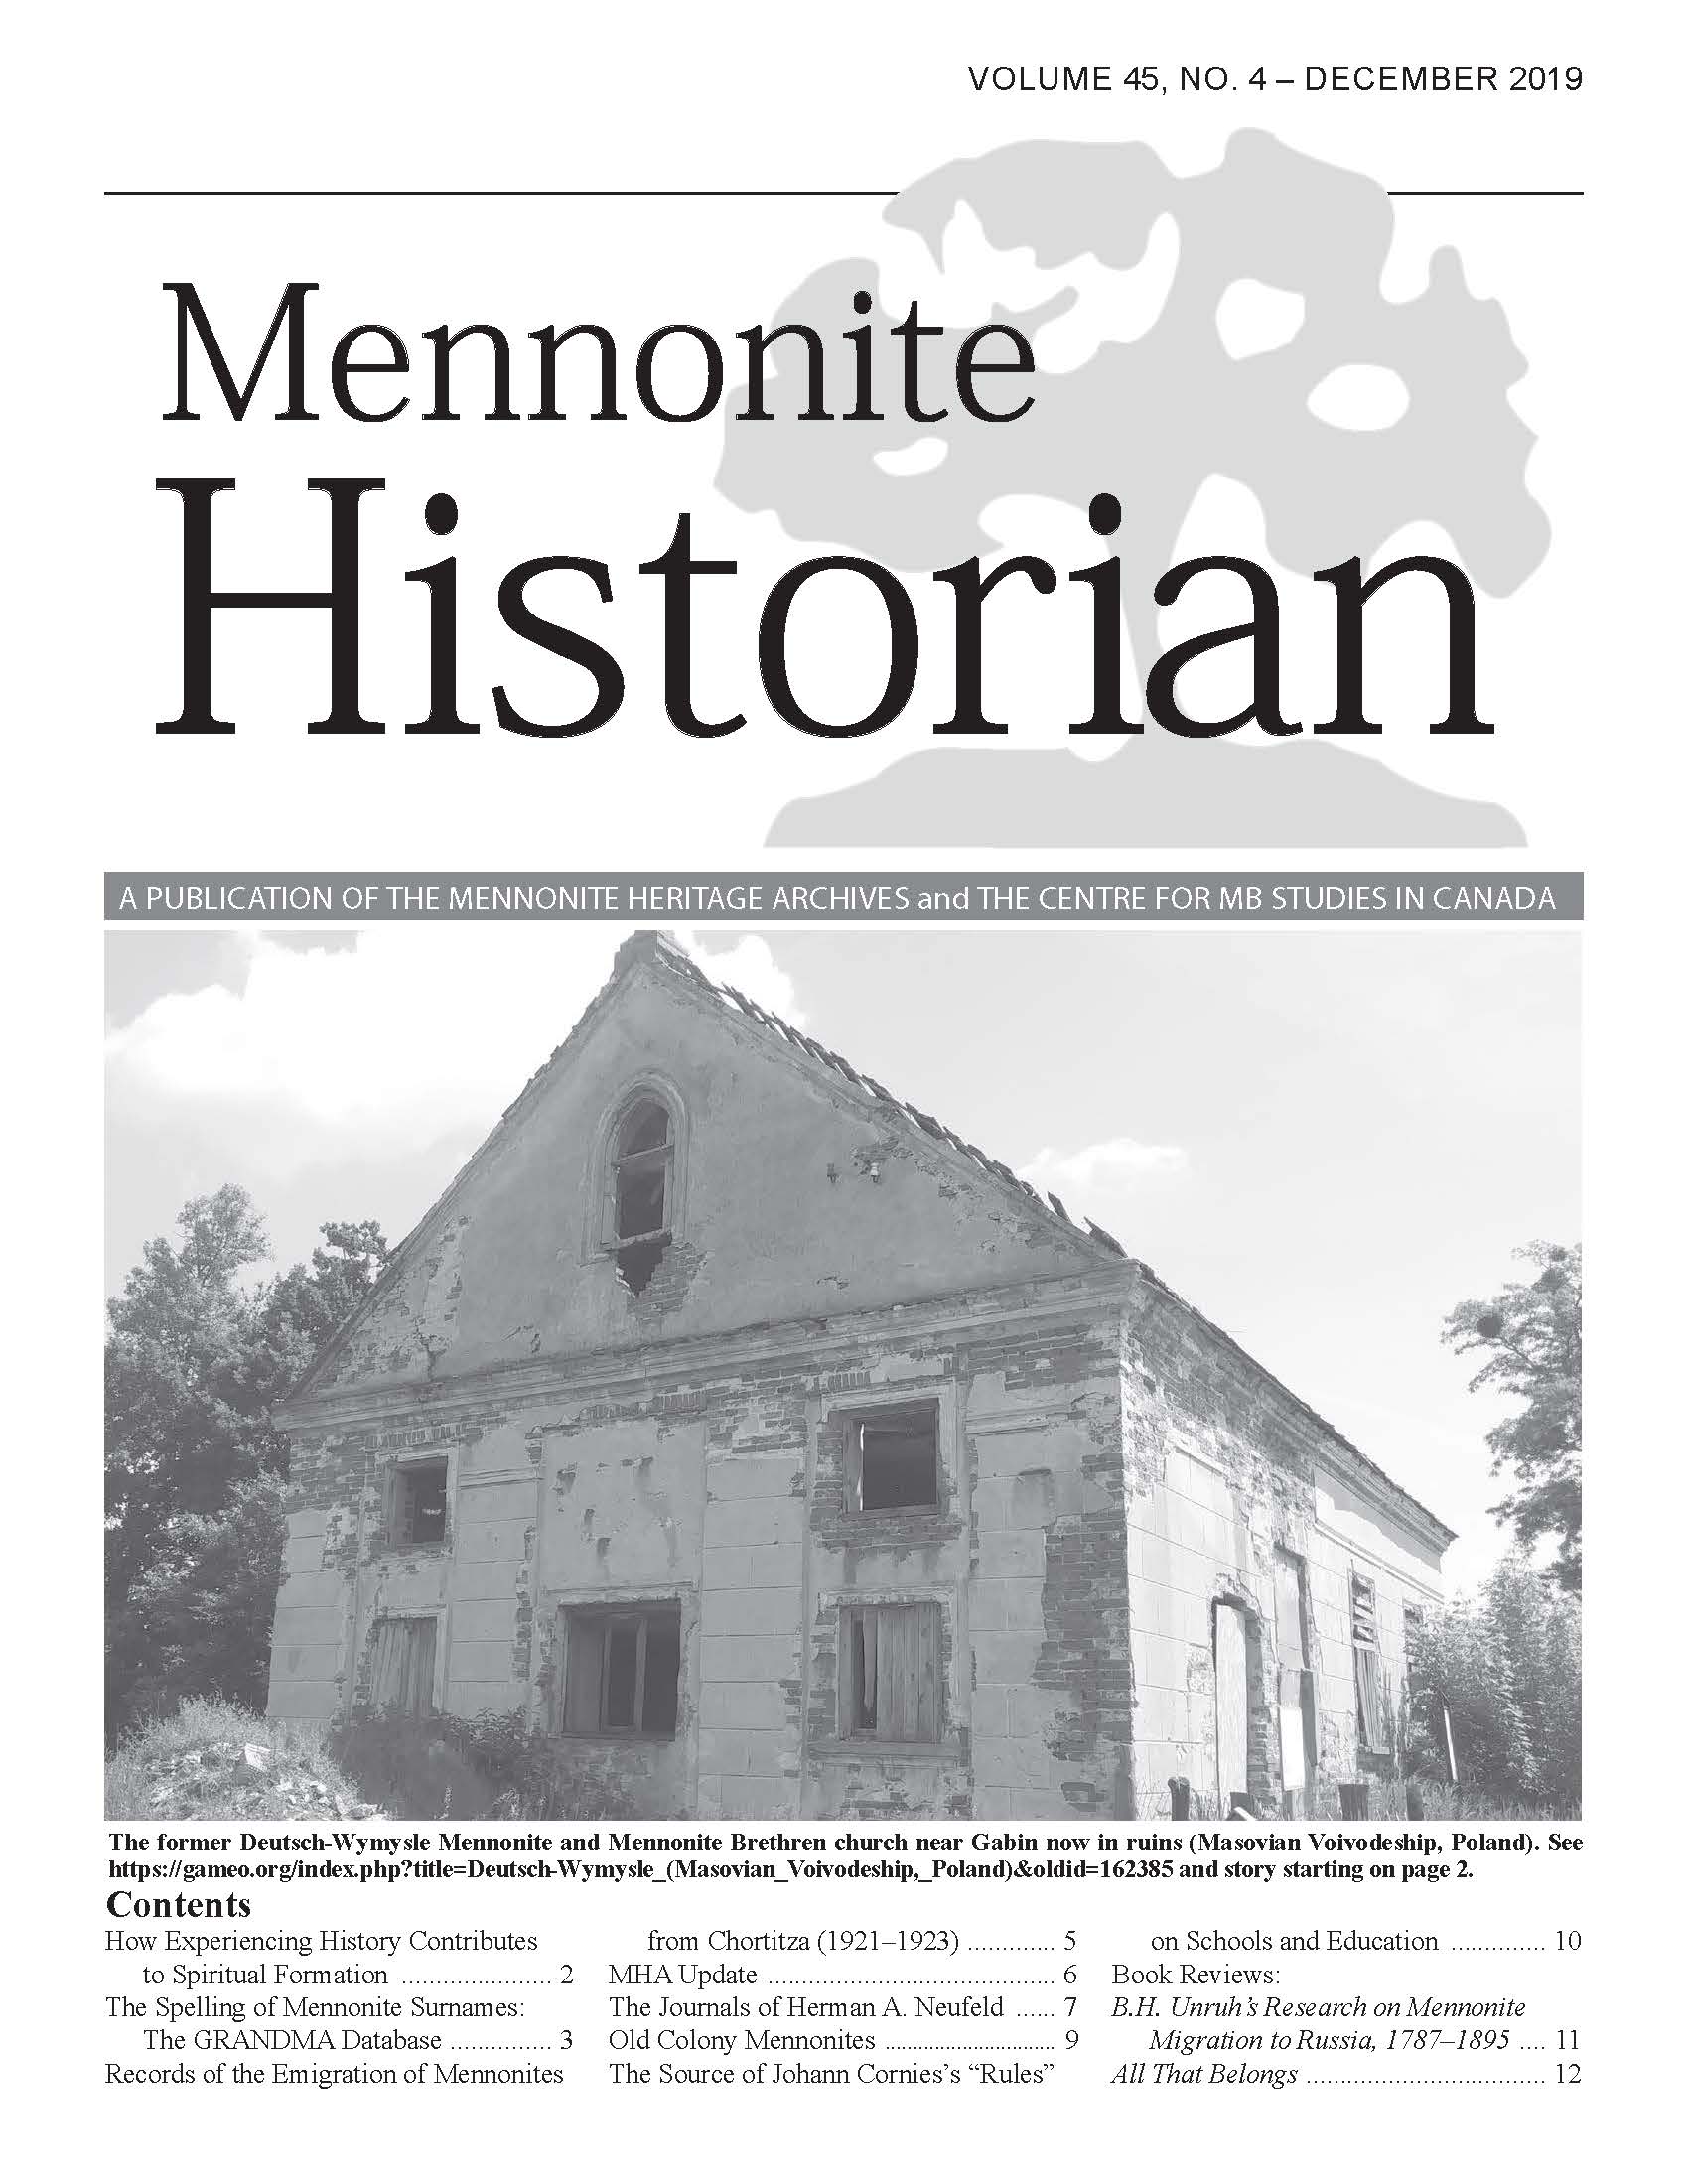 Mennonite Historian (December 2019)